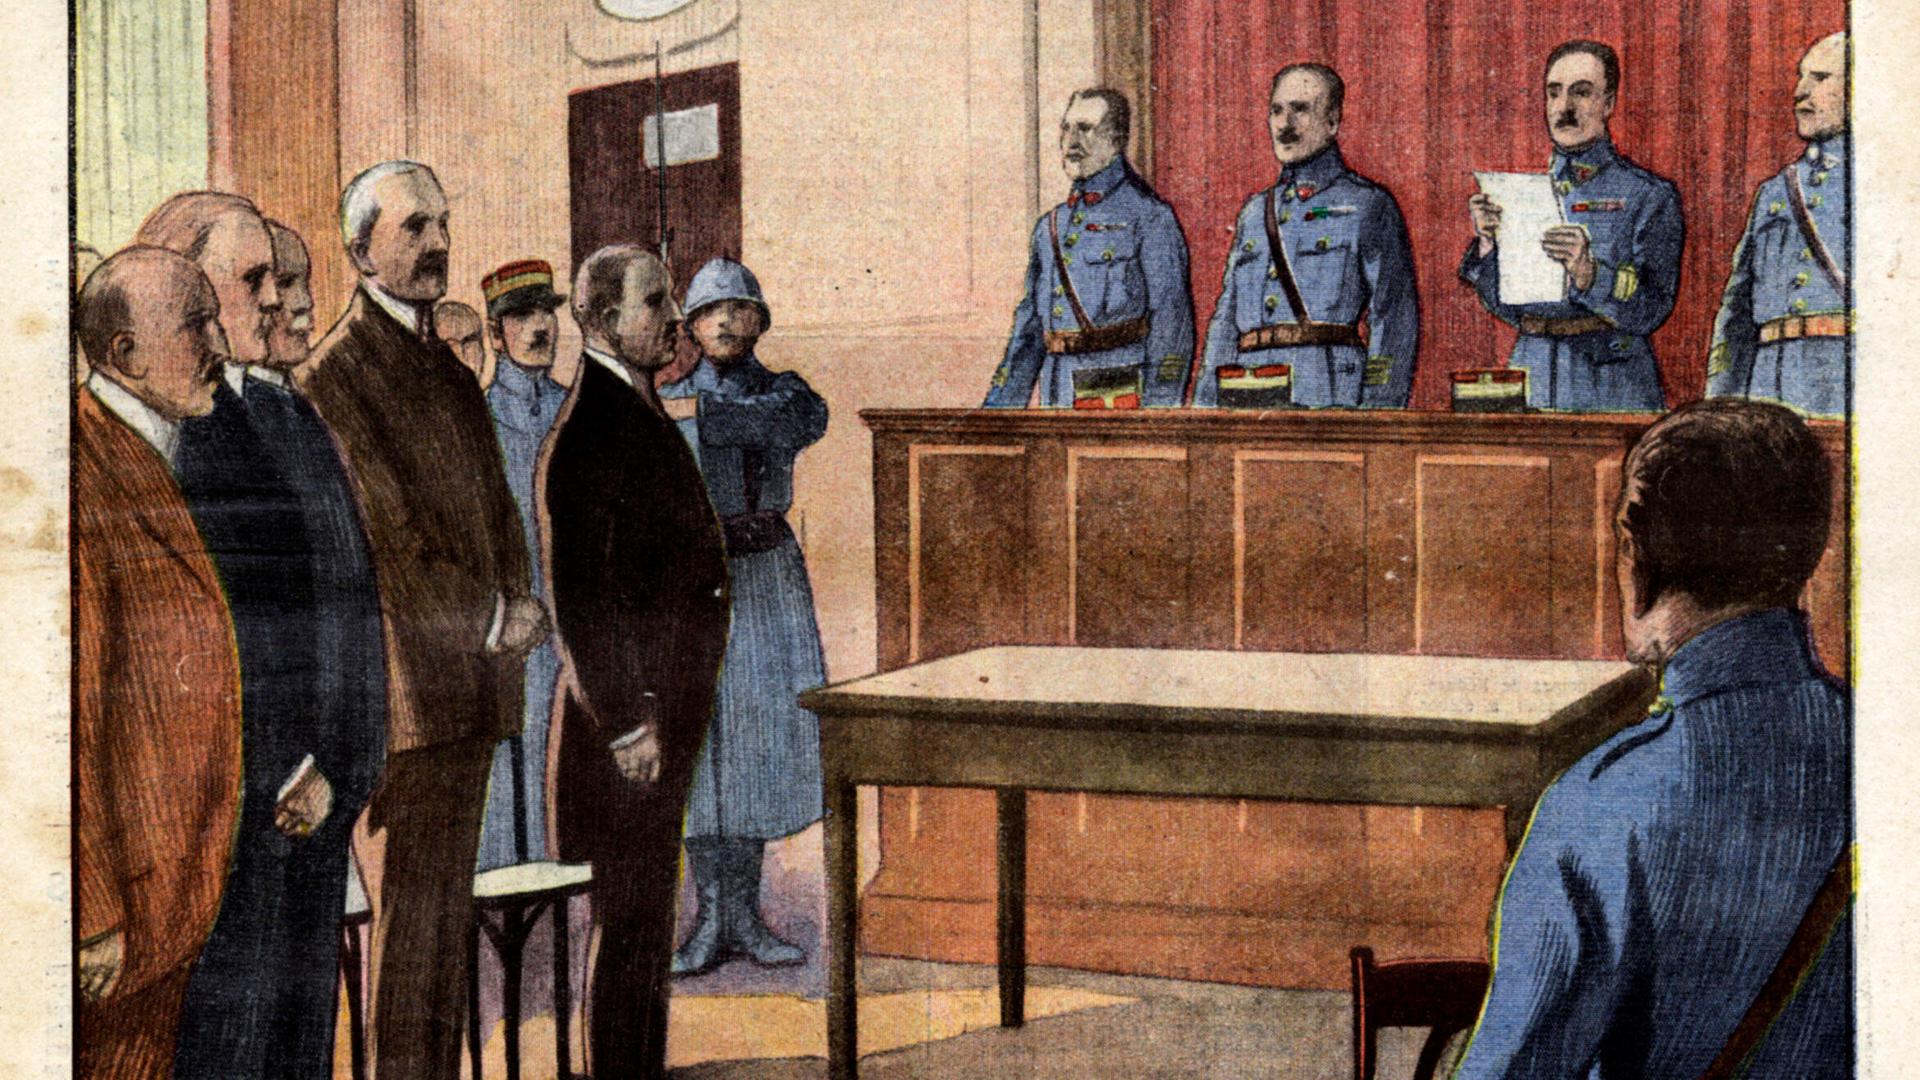 Prozess gegen Gustav Krupp von Bohlen und Halbach und Krupp-Manager ab Mai 1923 vor einem französischen Militär-Tribunal. Aufmacher der Zeitschrift "Petit Journal" vom 20. Mai 1923